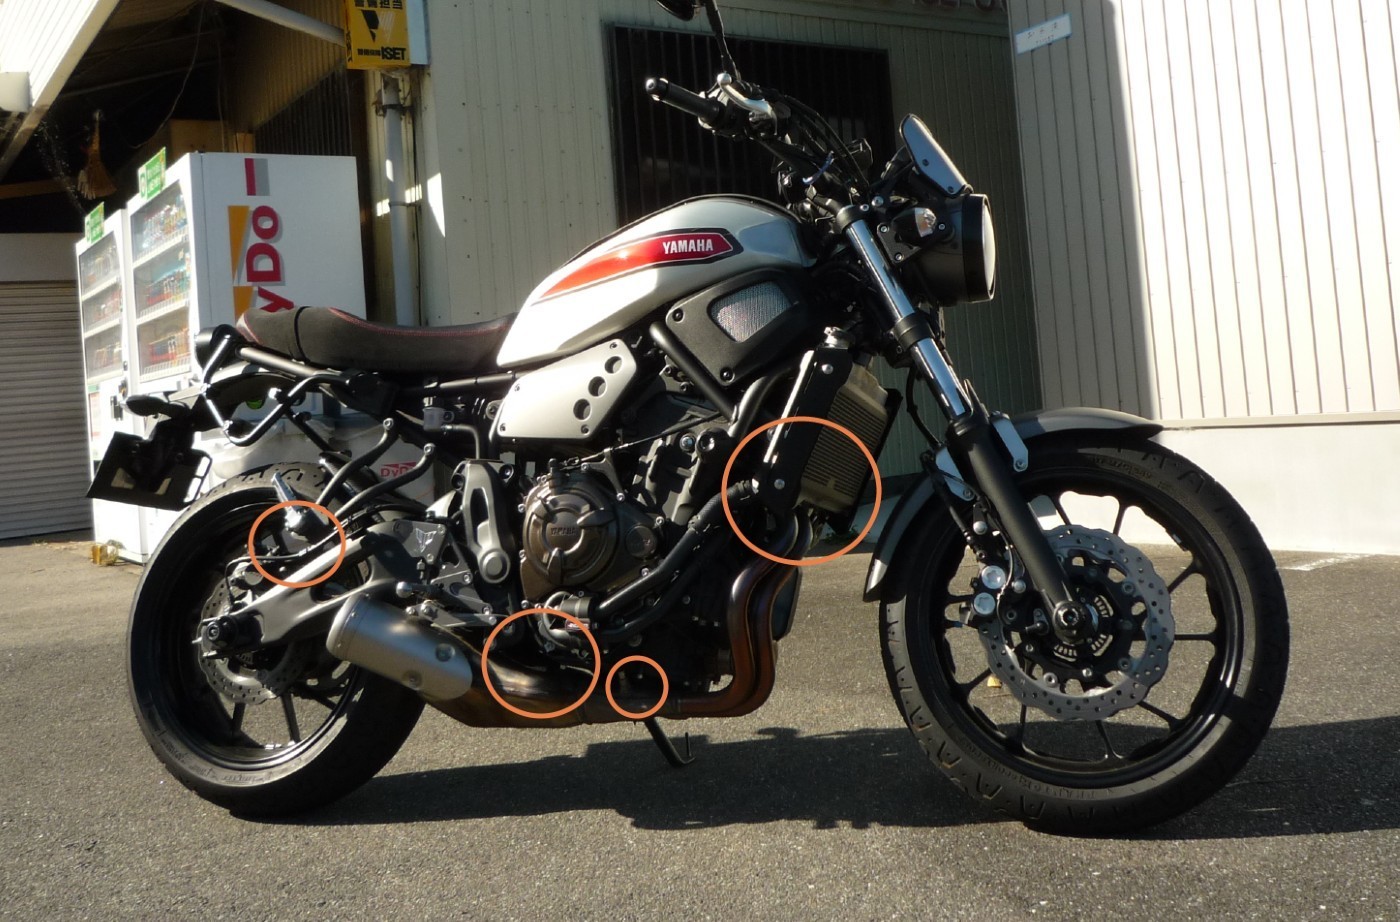 XSR700 カスタム⑥マフラー交換: ヌルライダーのバイク日記 ブルターレ 